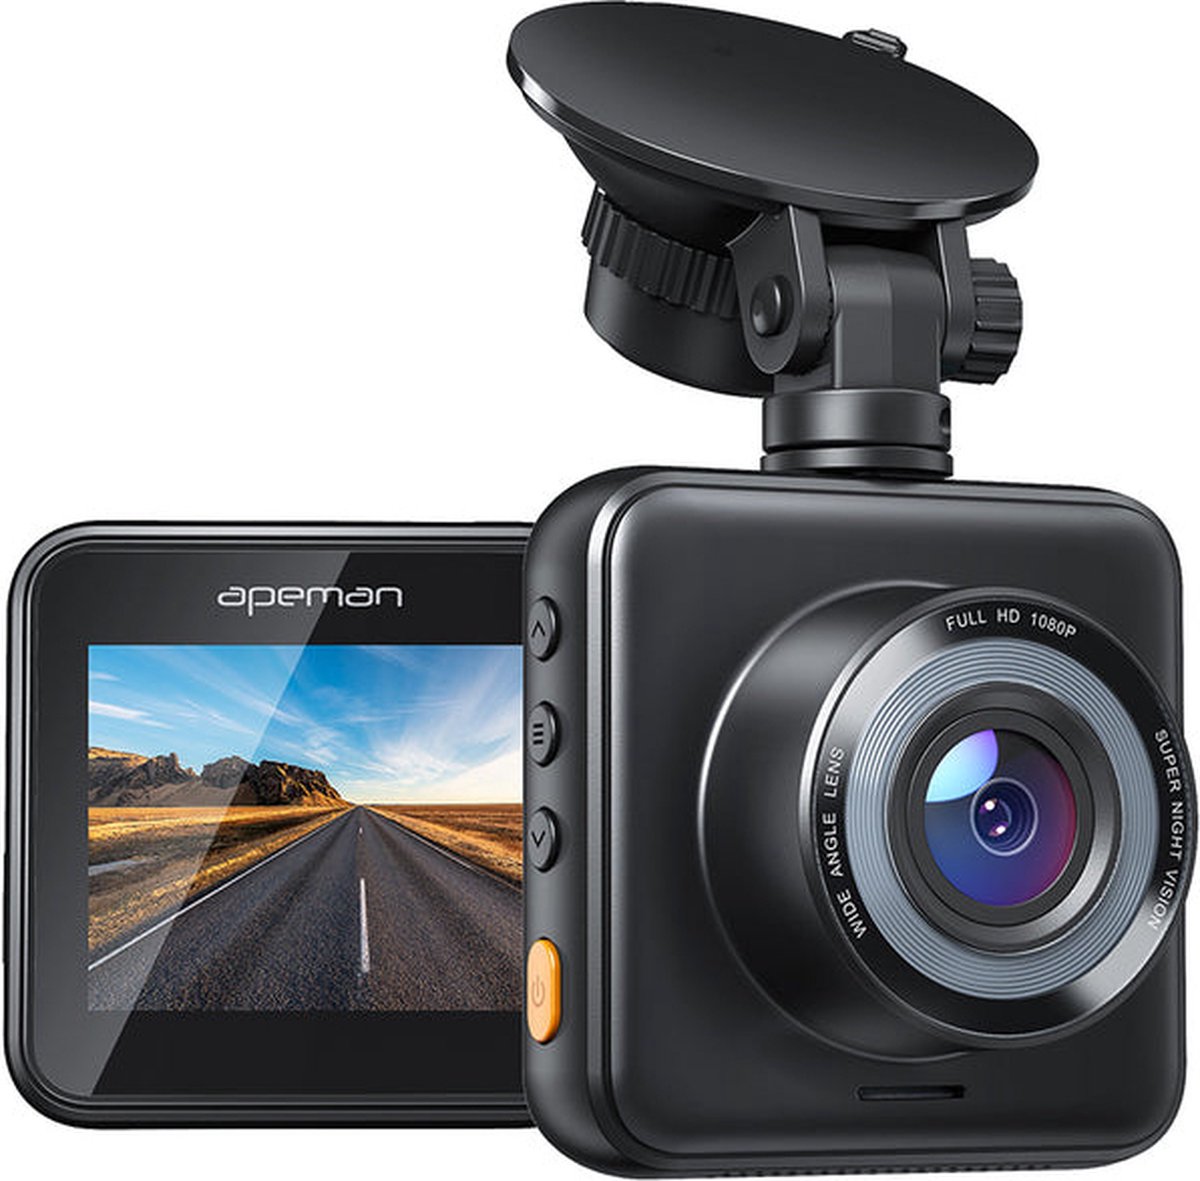 1080p double caméra de moto avec fonction GPS enregistreur de conduite  étanche enregistreur vidéo HD pour la conduite de moto